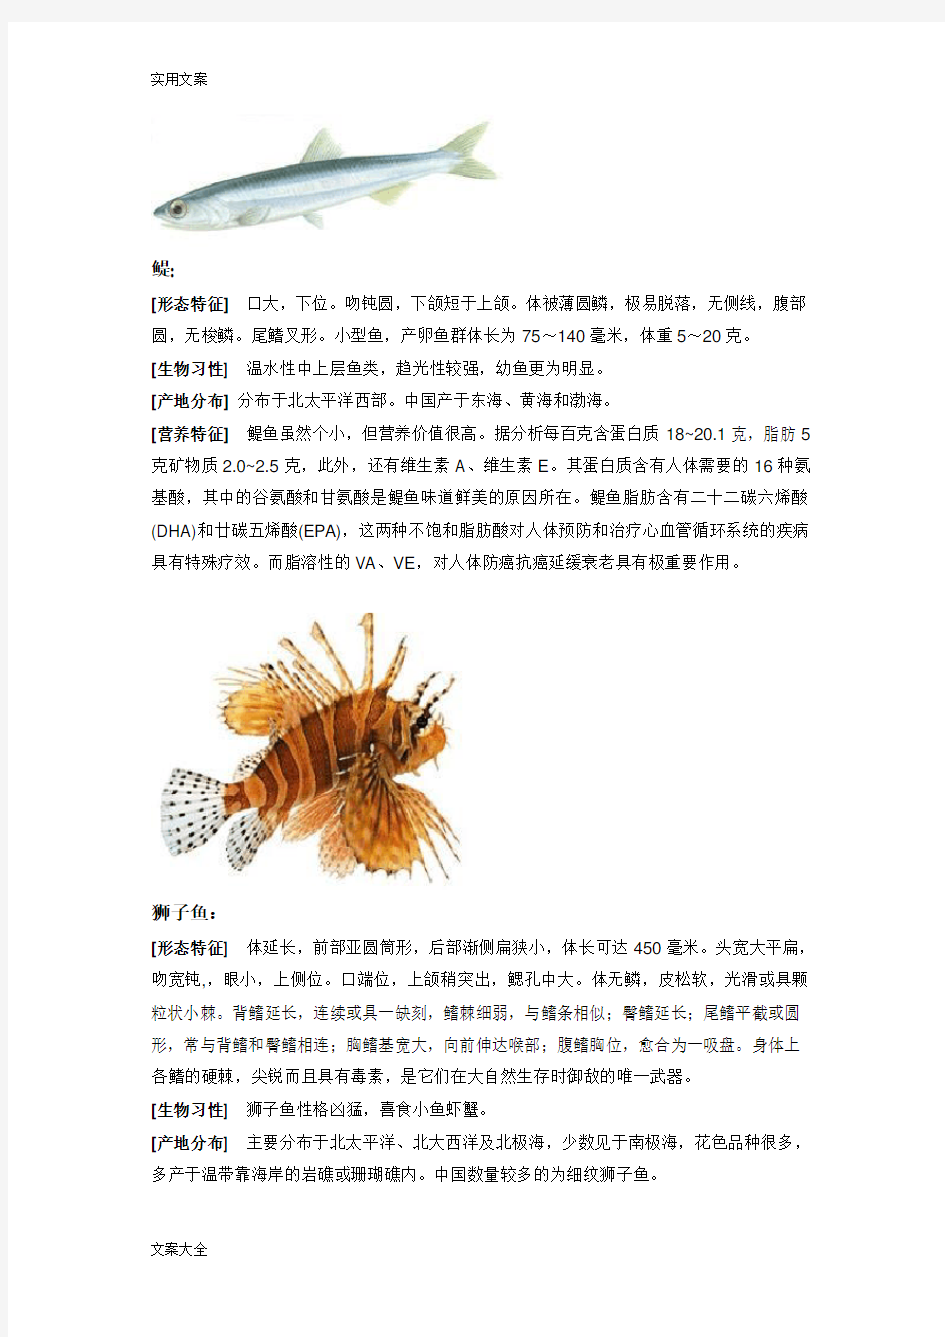 各种海鲜鱼类地介绍。